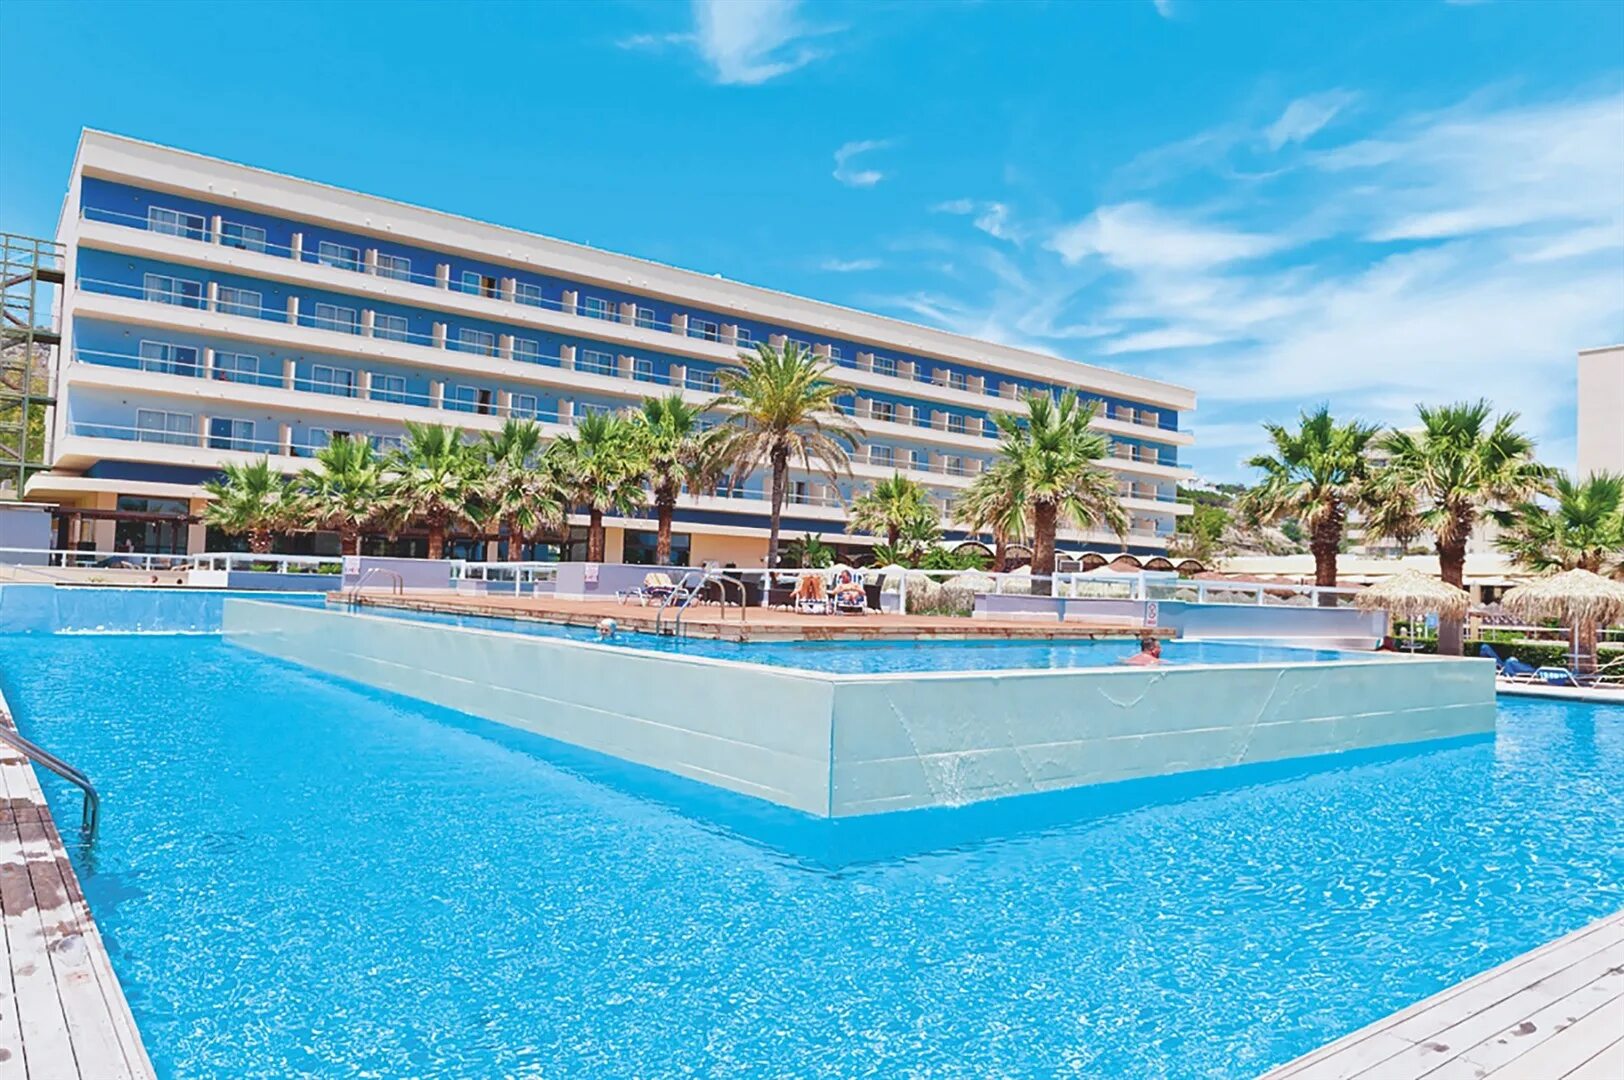 Отель sea beach. Blue Sea Родос. Blue Sea Beach Resort Rhodos. Zeus Hotels Blue Sea Beach 5*. Блю си отель Греция.